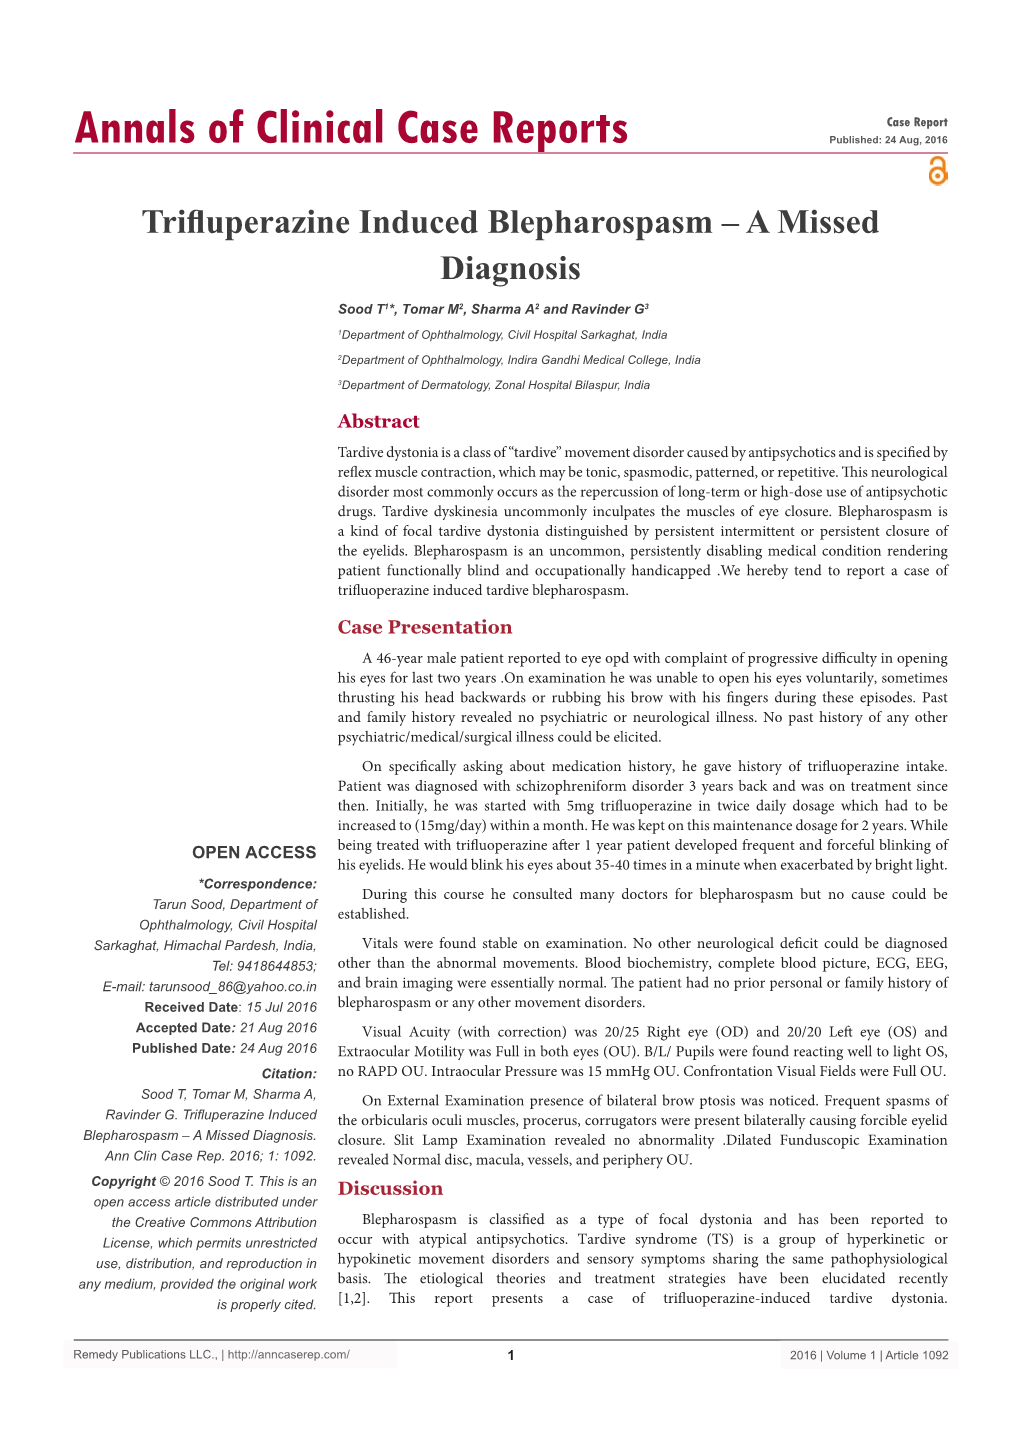 Trifluperazine Induced Blepharospasm – a Missed Diagnosis